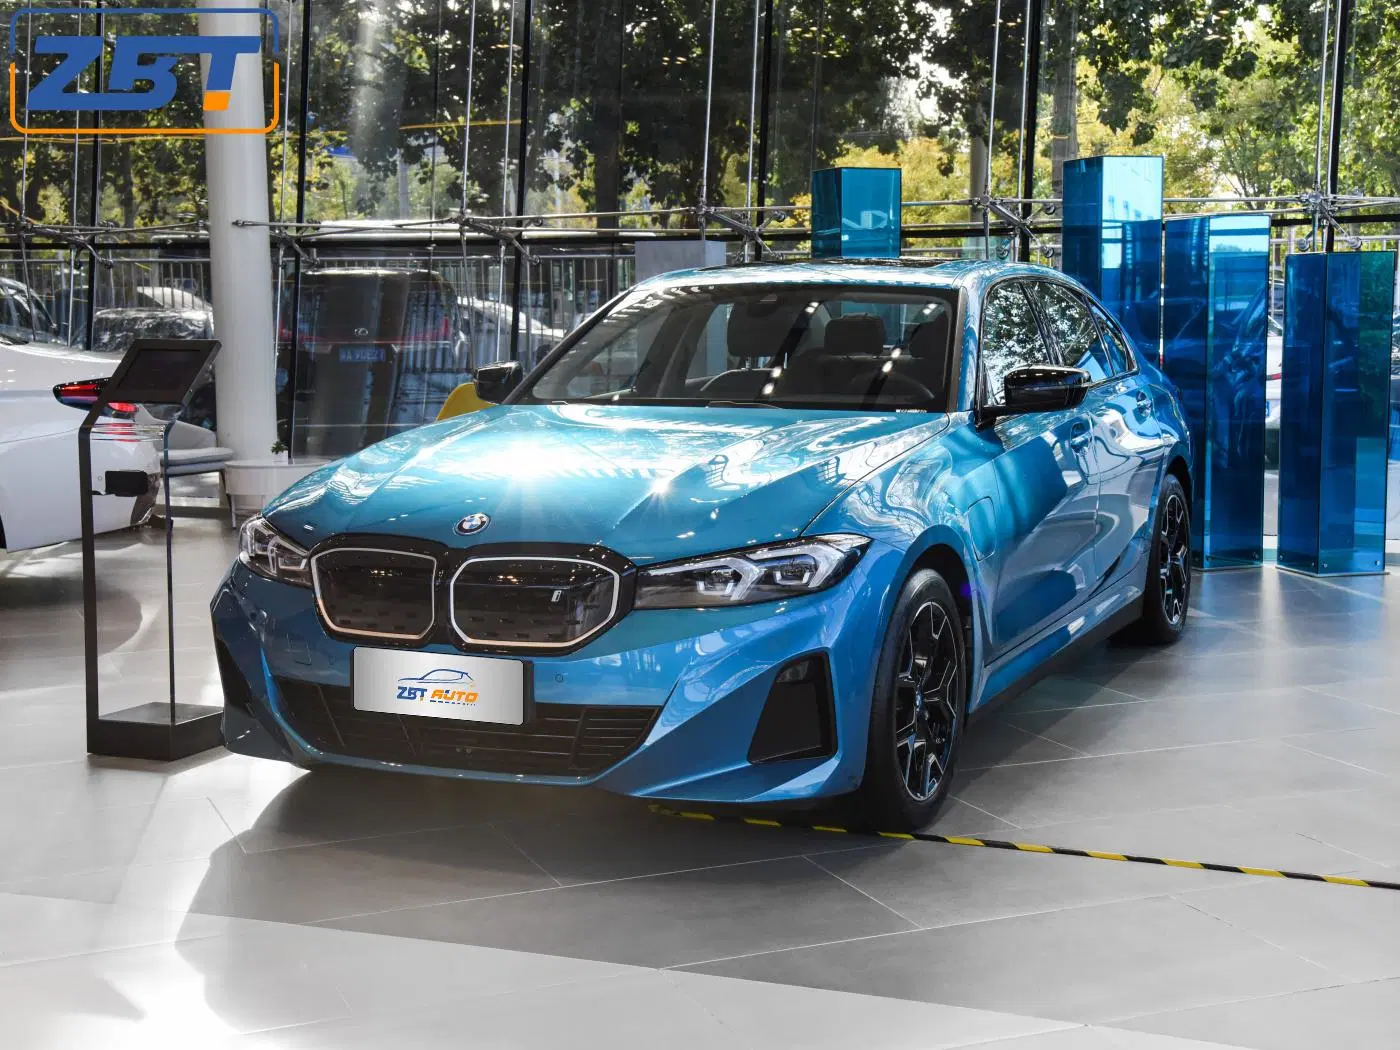 BMW o I3 carro usado novos veículos de energia Electromobil feito Venda de automóveis elétricos na China